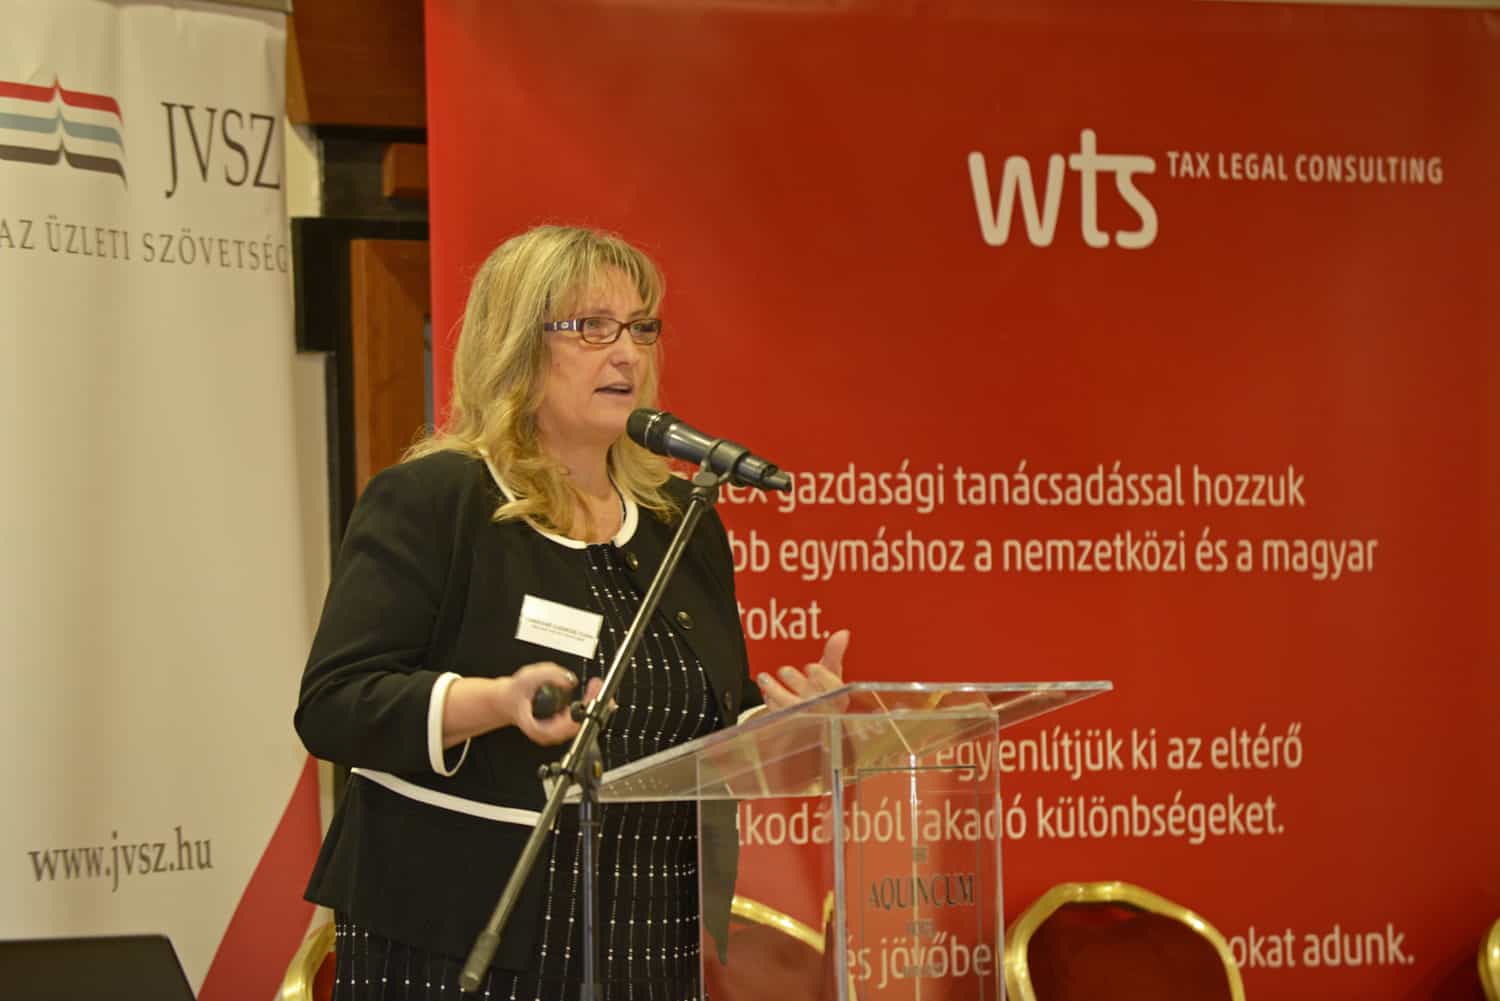 Csilla Tamásné Czinege, Stellvertretende Staatssekretärin spricht über Steueradministration